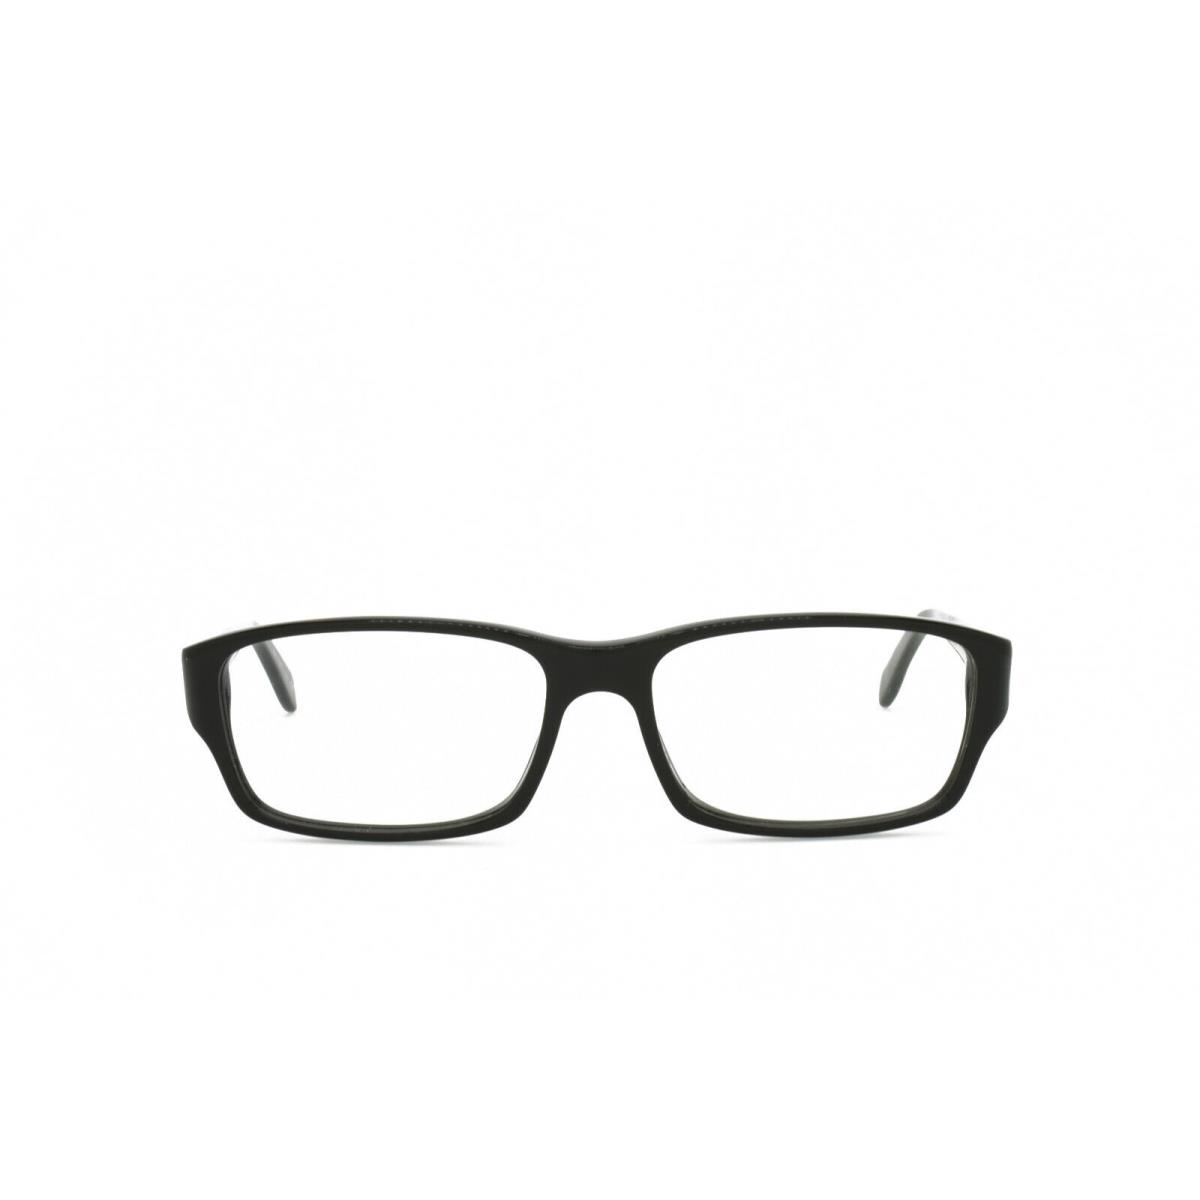 Oliver Peoples Shae 5163 1005 Eyeglasses Frames Only 54-15-140 - Black, Frame: Black